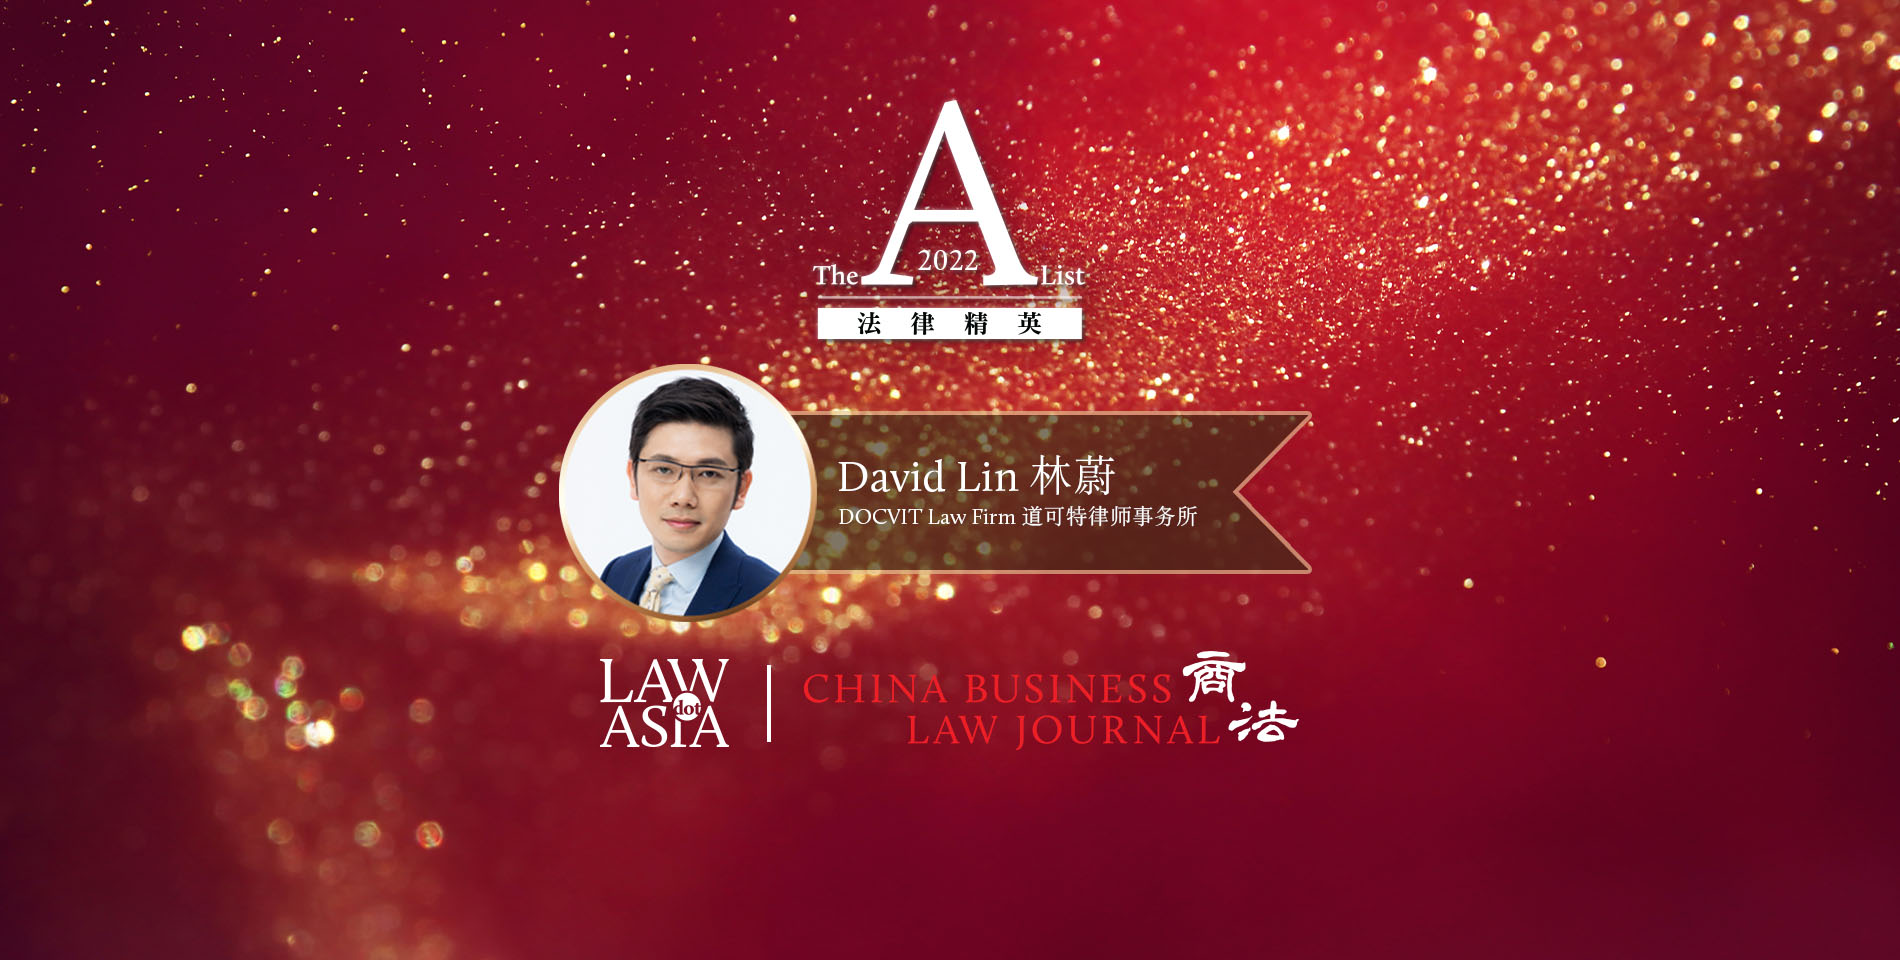 林蔚- 道可特律师事务所- 北京- 《商法》2022年法律精英简介